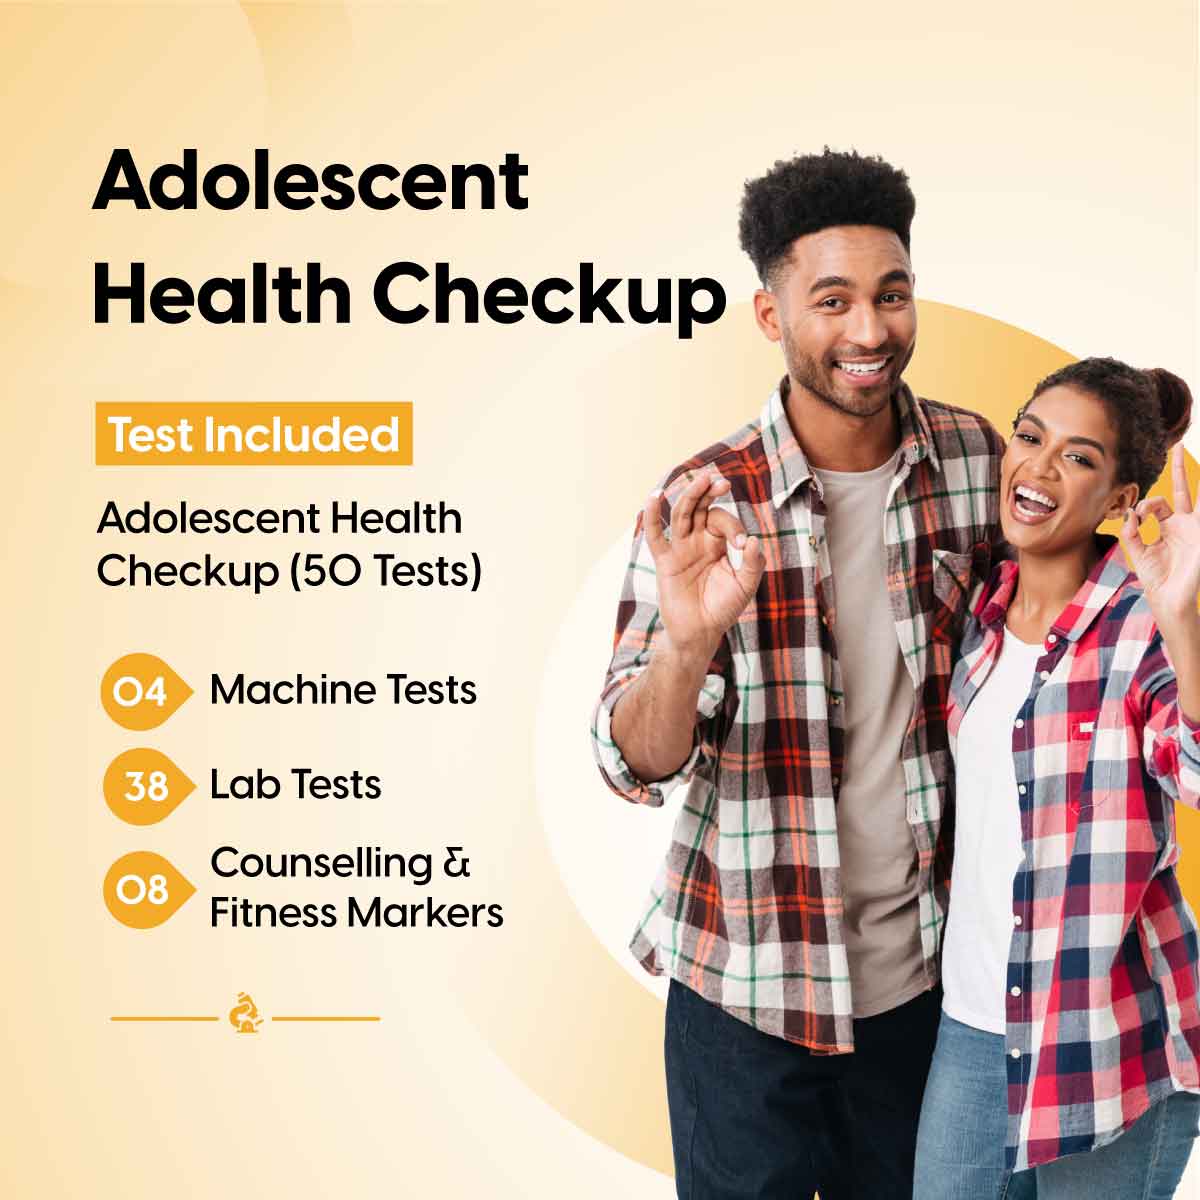 Adolescent Health Checkup